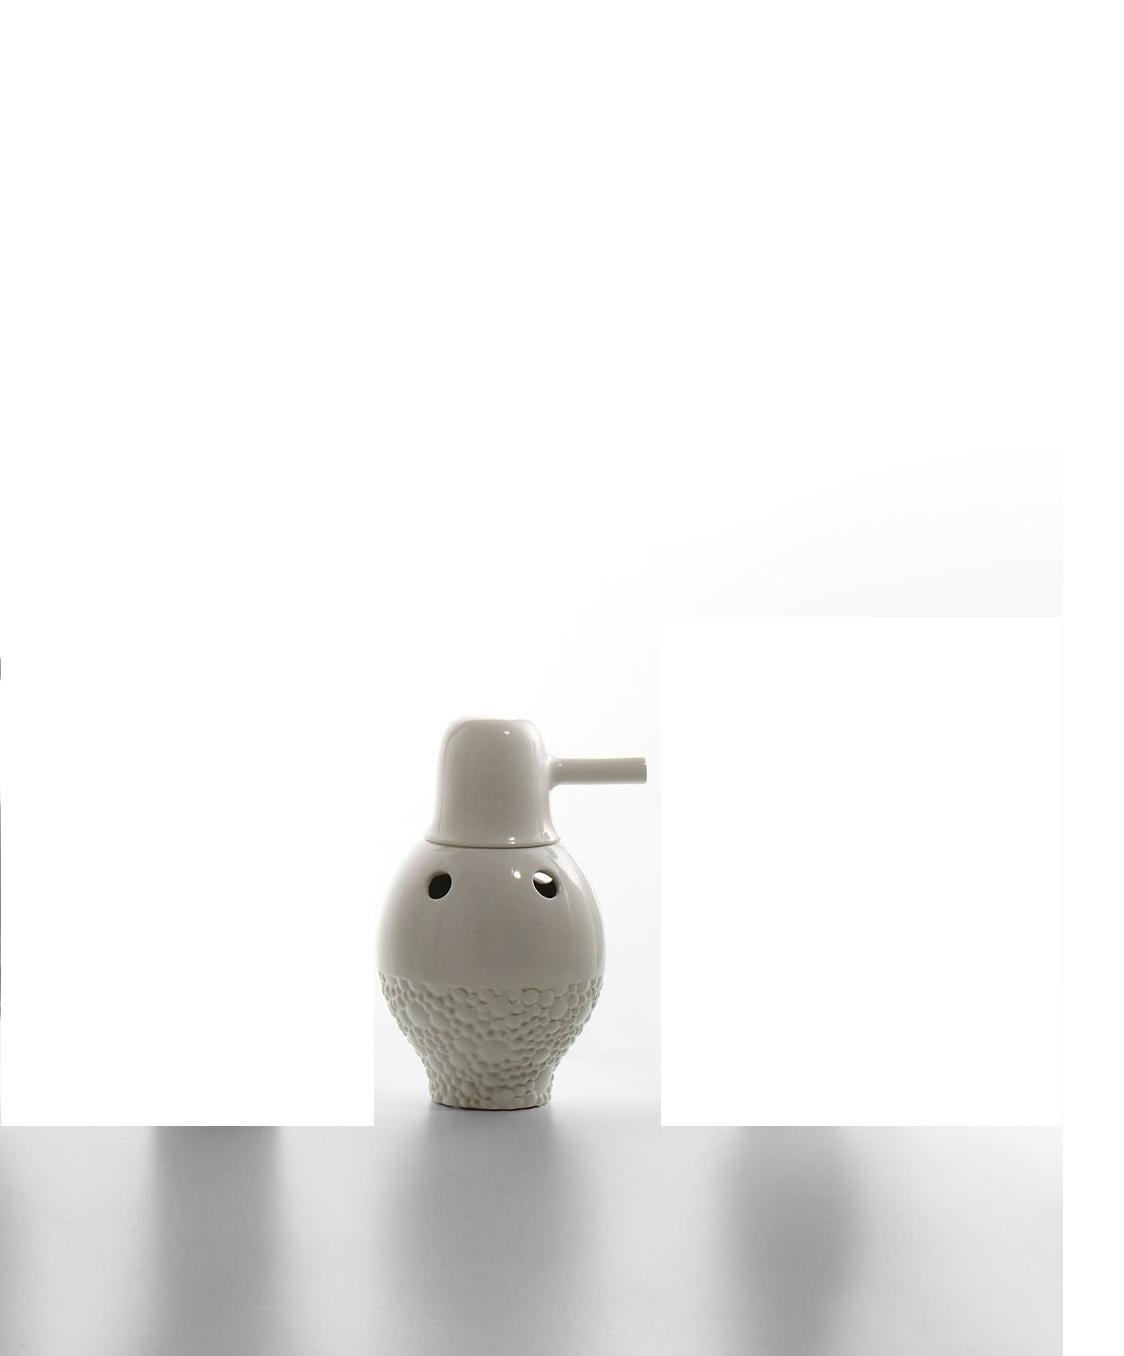 Nummer-1-Showtime-Vase von Jaime Hayon 
Abmessungen: Durchmesser 19 x H 33 cm 
MATERIALIEN: Zweiteilig, aus emailliertem Feinsteinzeug, einfarbig (innen und außen weiß) oder zweifarbig (innen weiß und außen in verschiedenen Farben, je nach